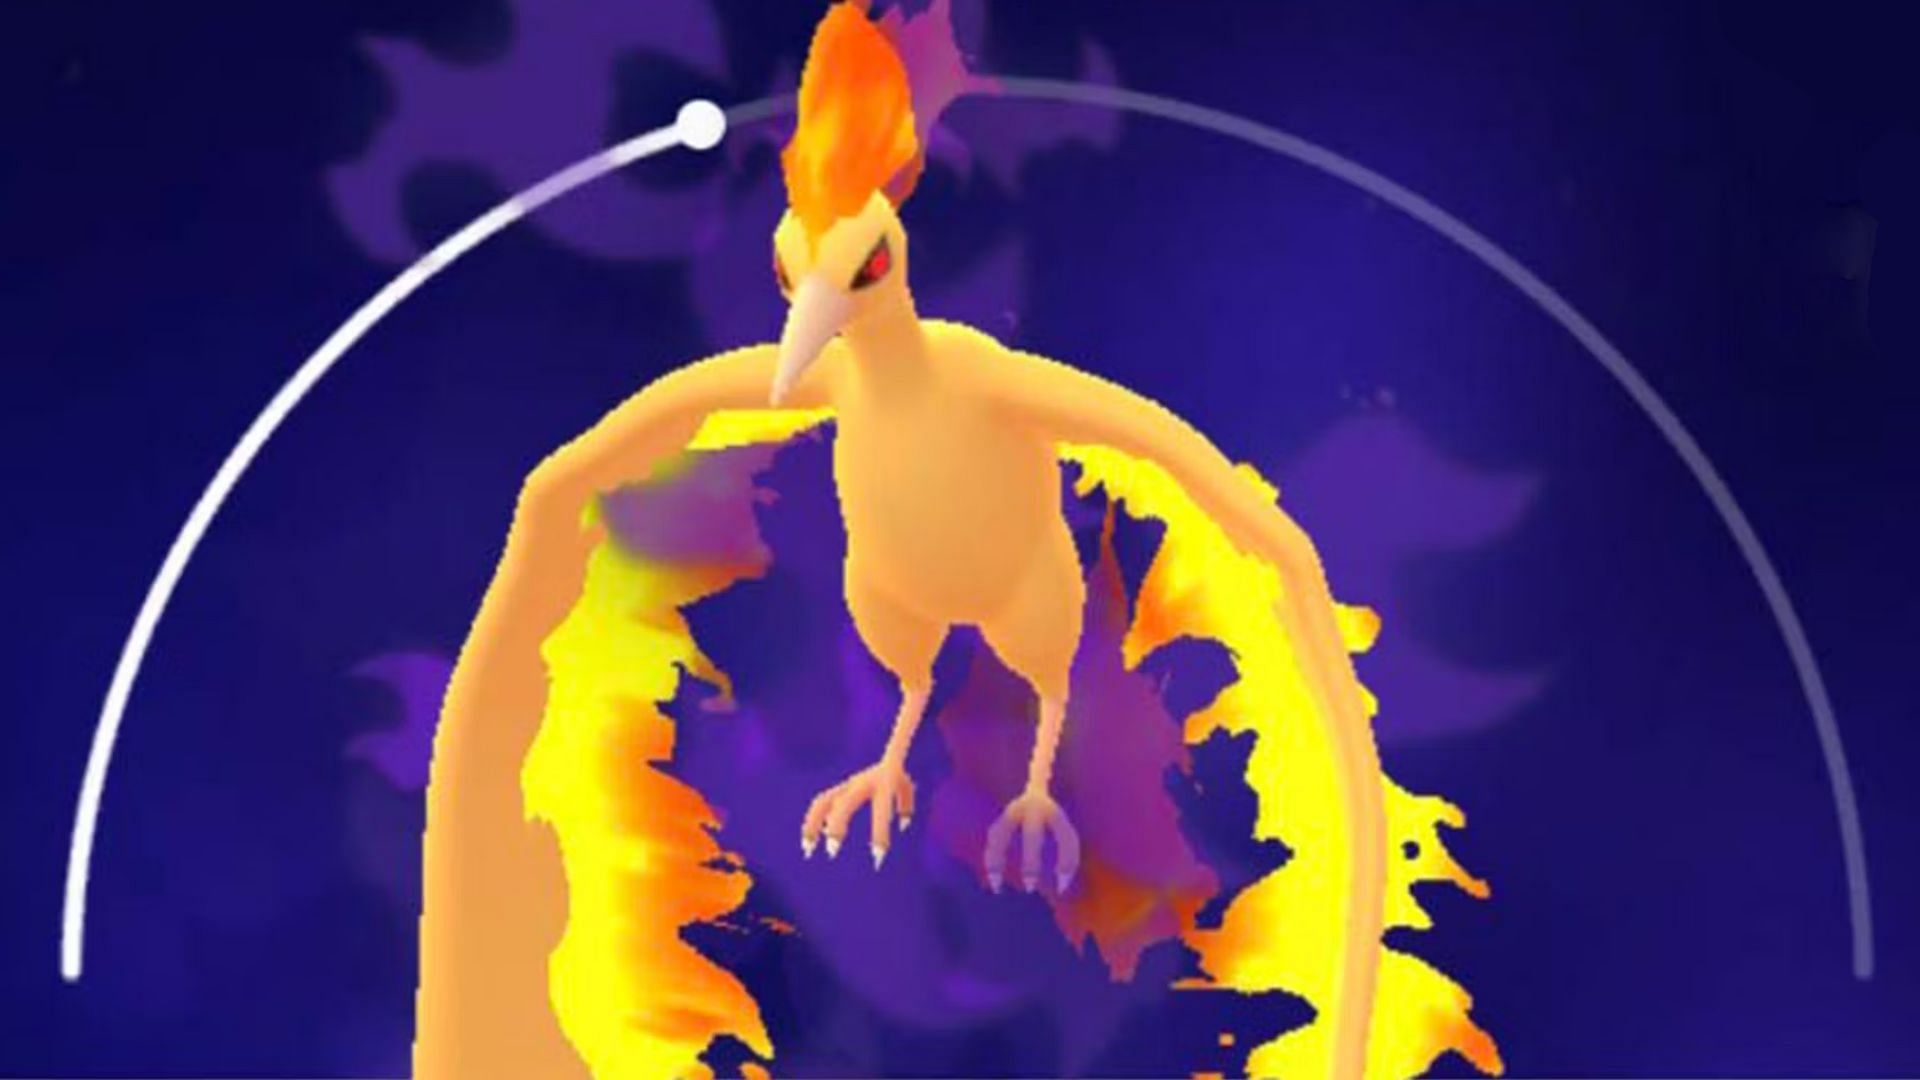 Pokemon GO: Shadow Moltres Raid Guide